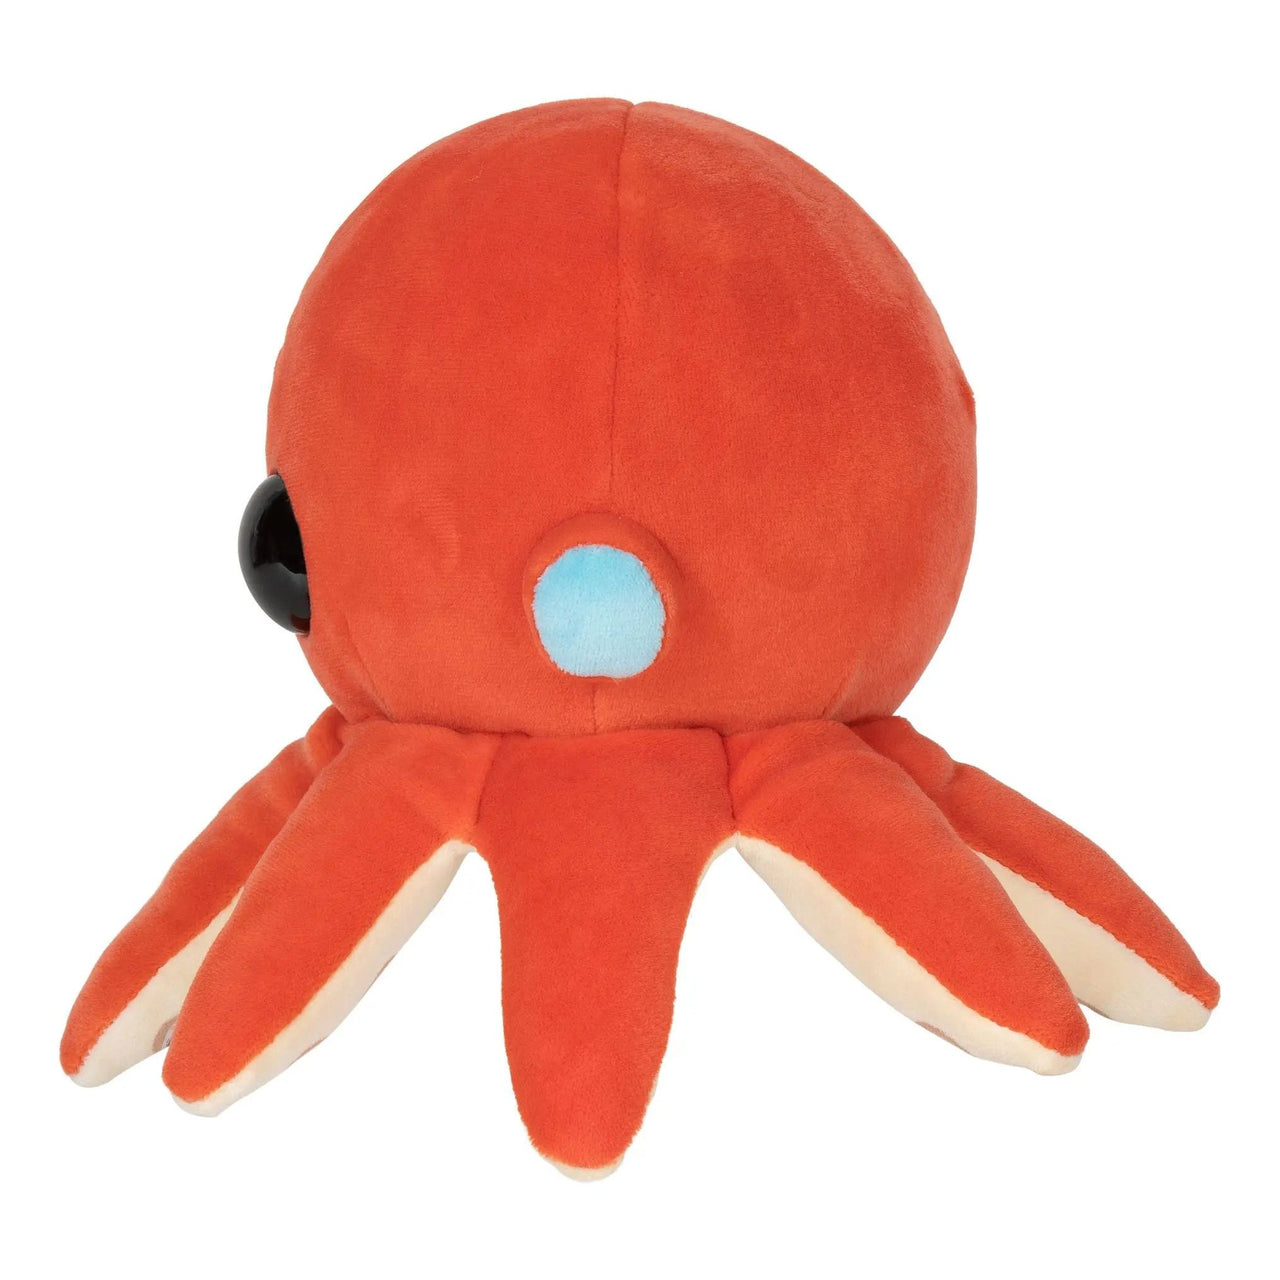 Adopt Me 8" Octopus Collector Plush Adopt Me